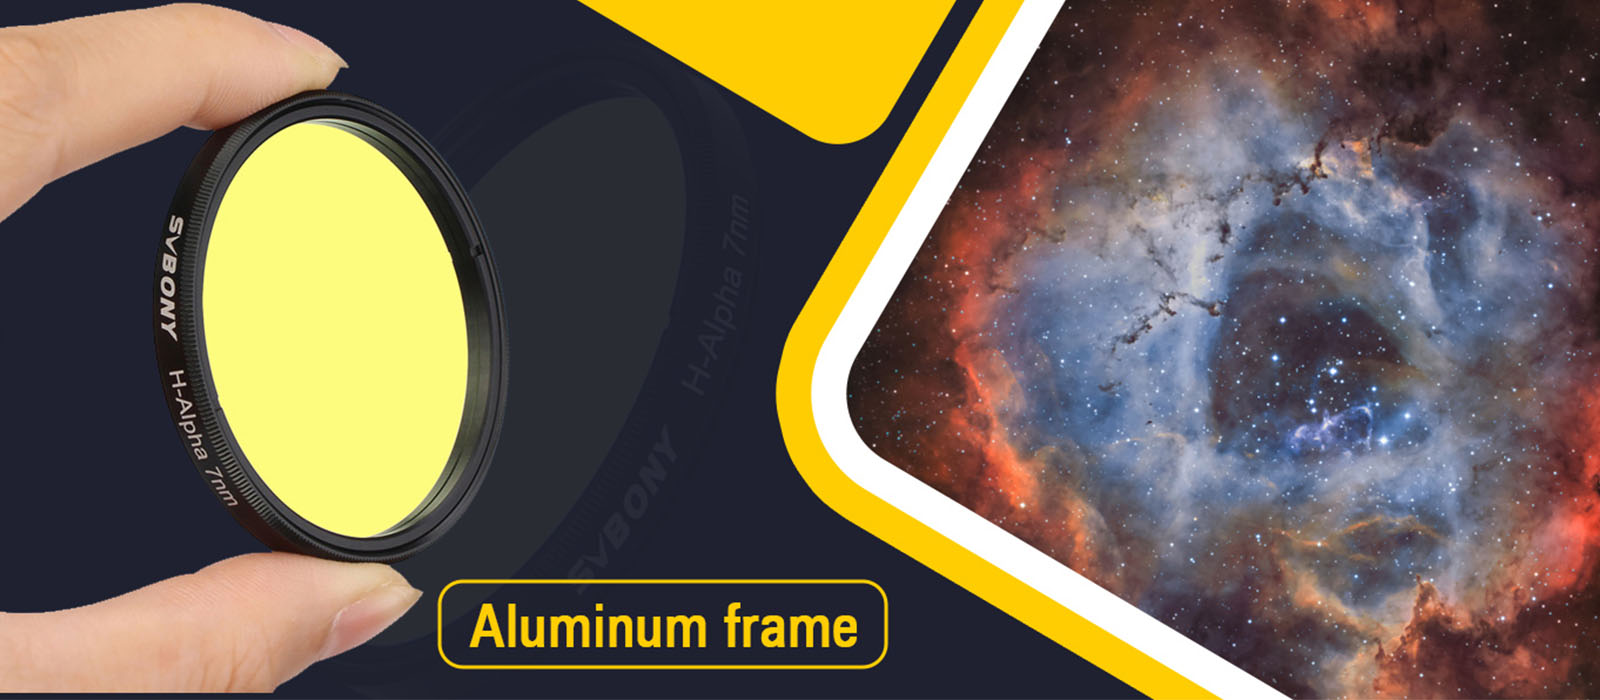 sho filter with aluminum frame.jpg